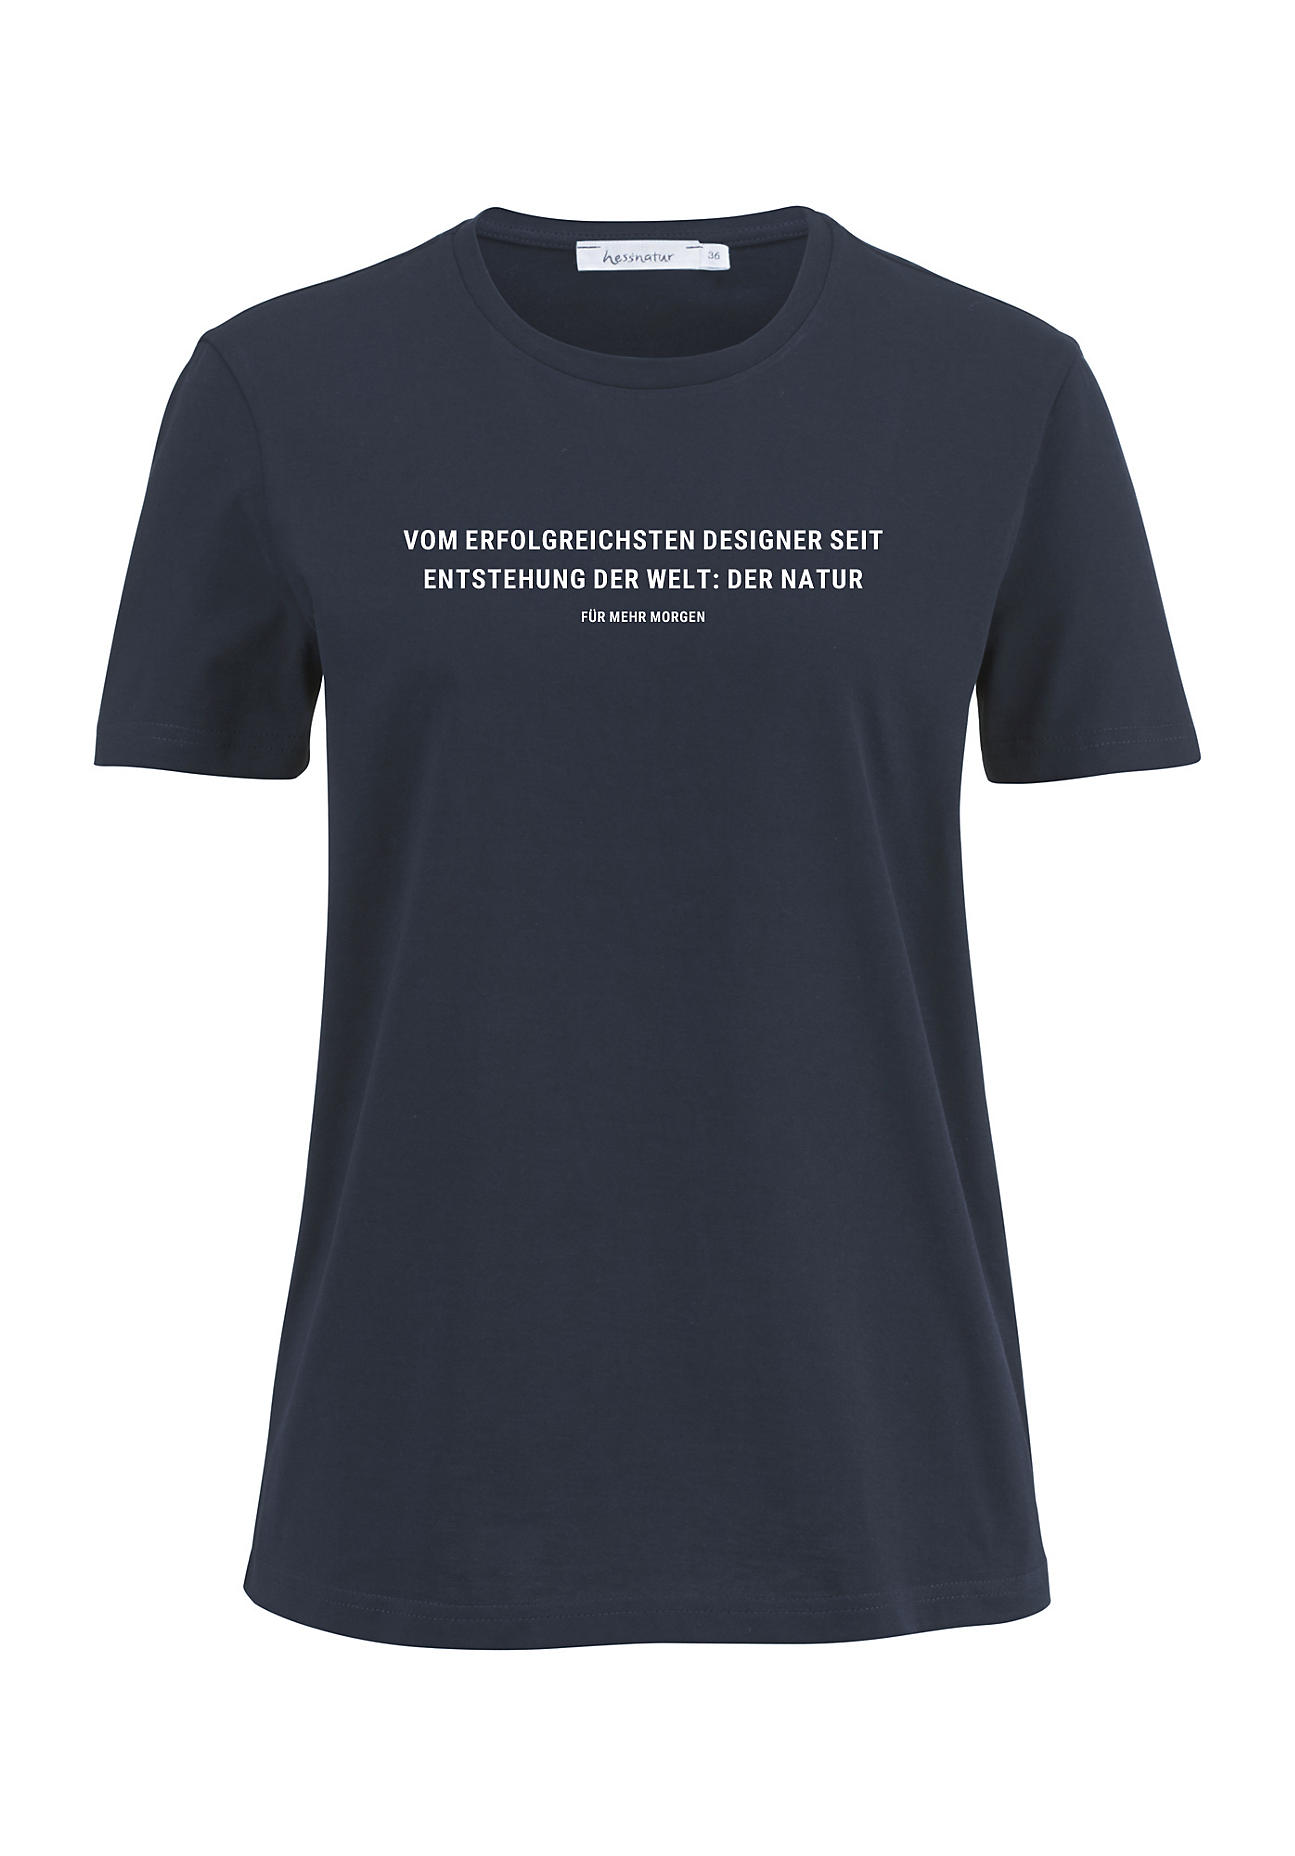 hessnatur Damen Statement Shirt aus Bio-Baumwolle - blau - Größe 44